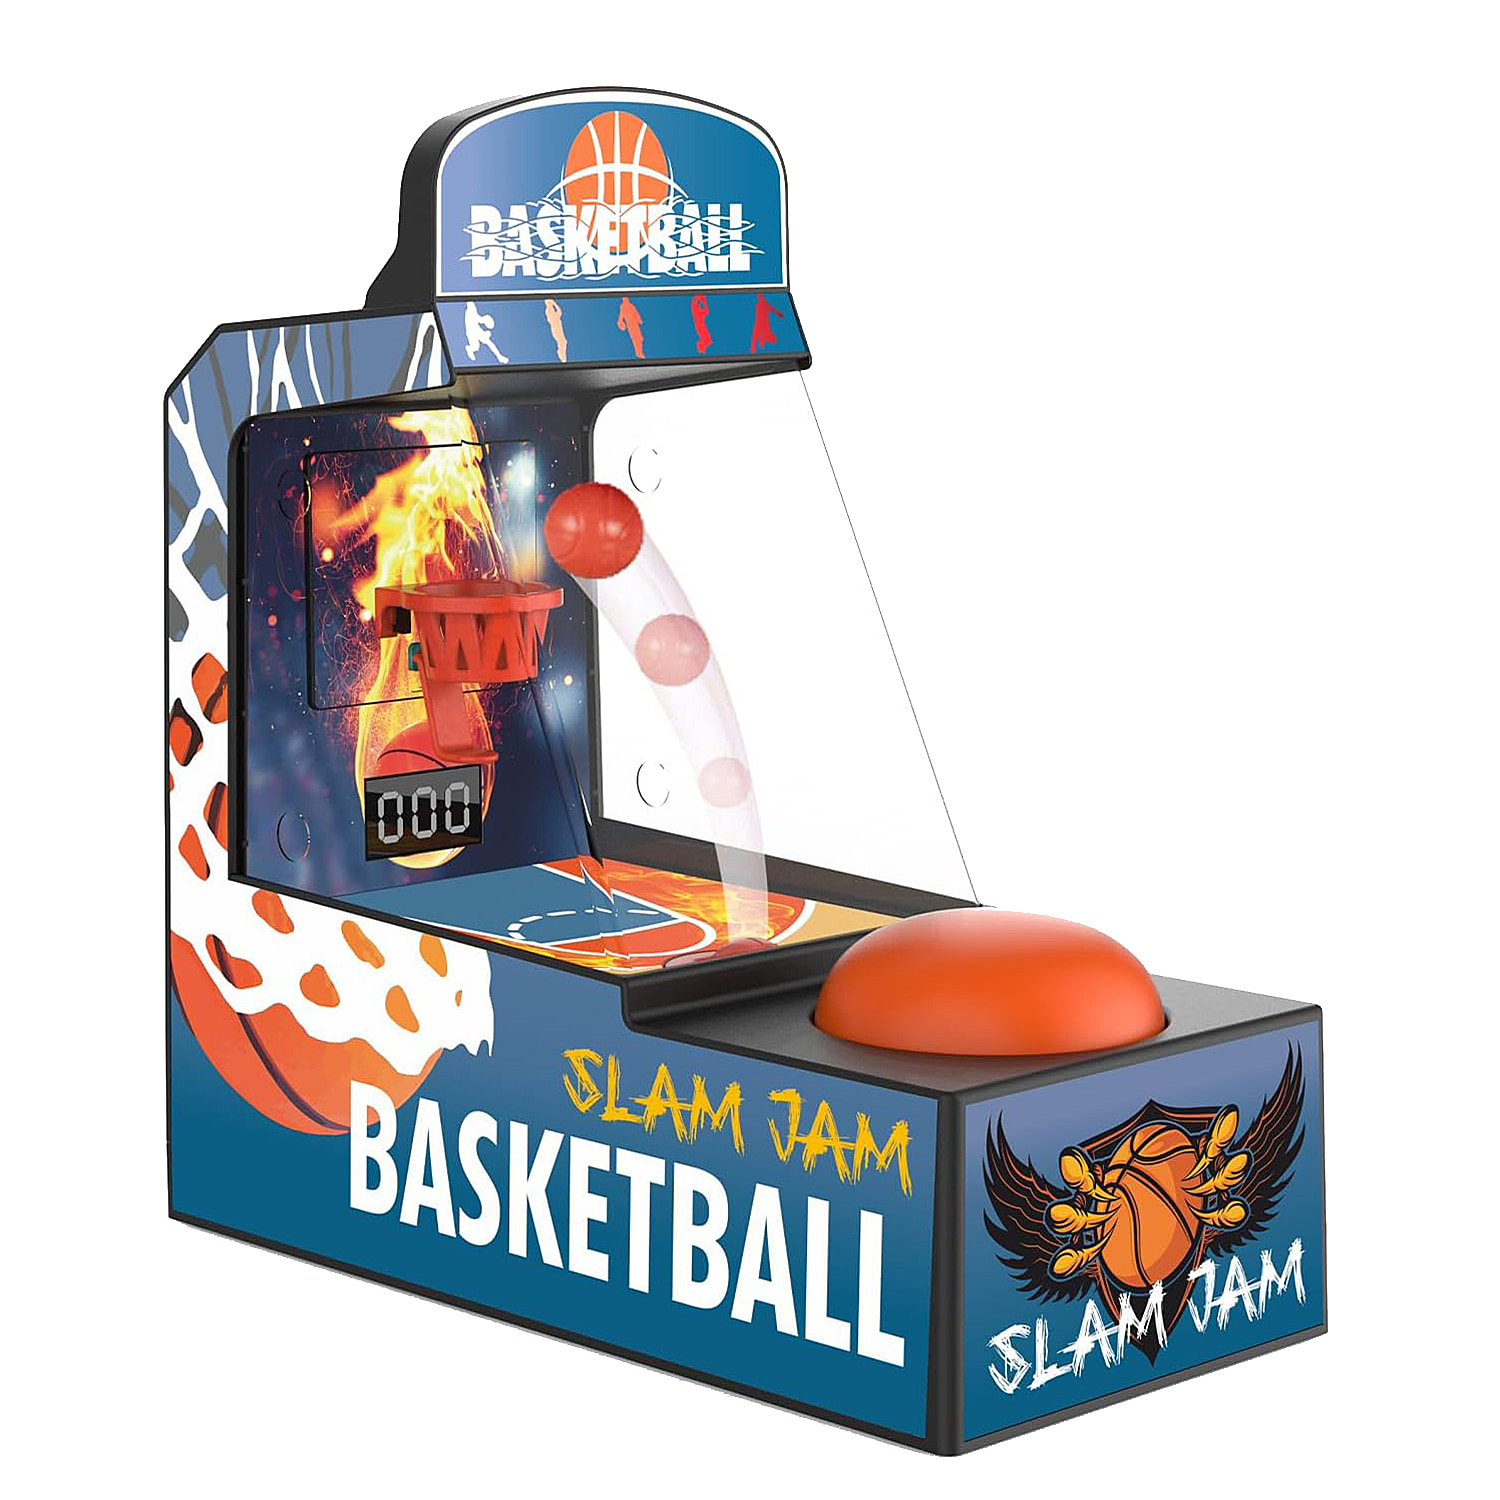 Retro-Arcade-Basketball-Game-Indoor-Fun